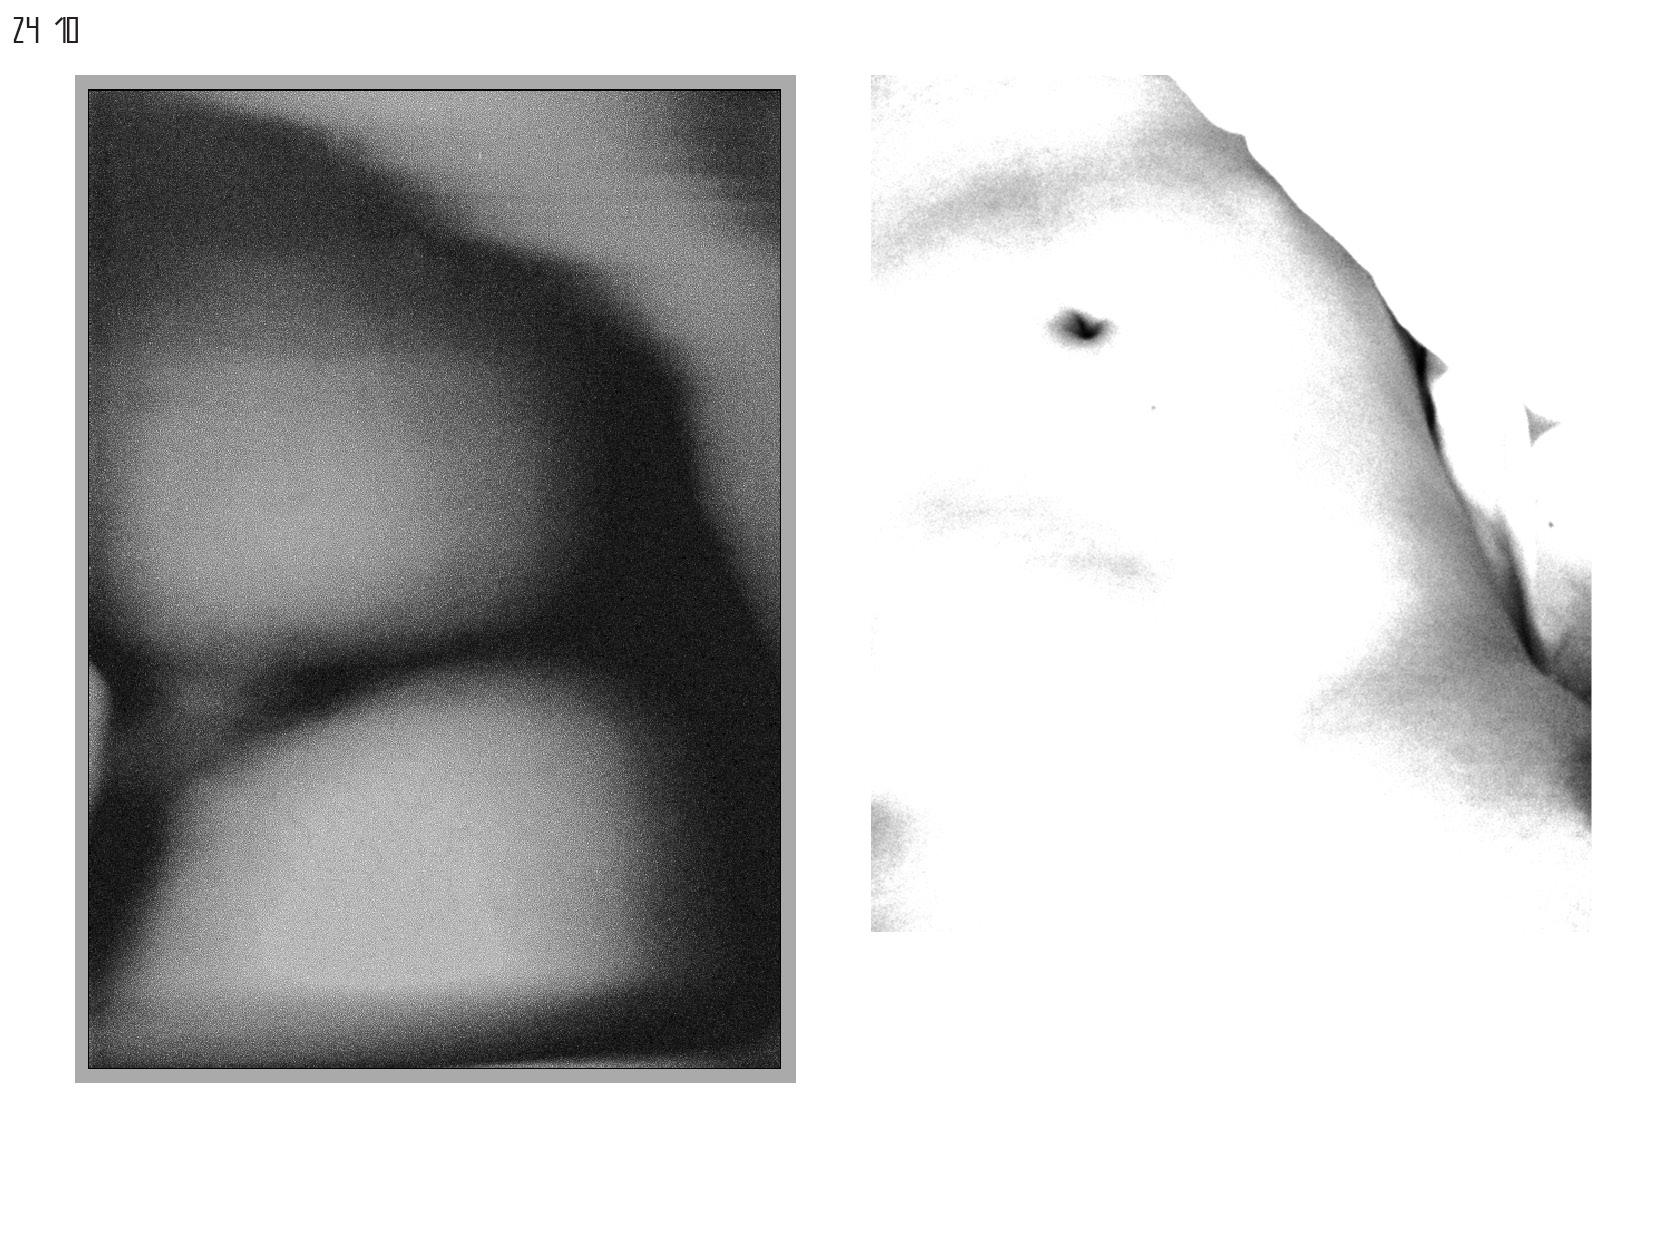 Gerrit-Schweiger-Dialog-Städte-Paris-Berlin-Jessica-Blank-Experiment-Fotoserie-Tagebuch-visuelle-Kommunikation-9